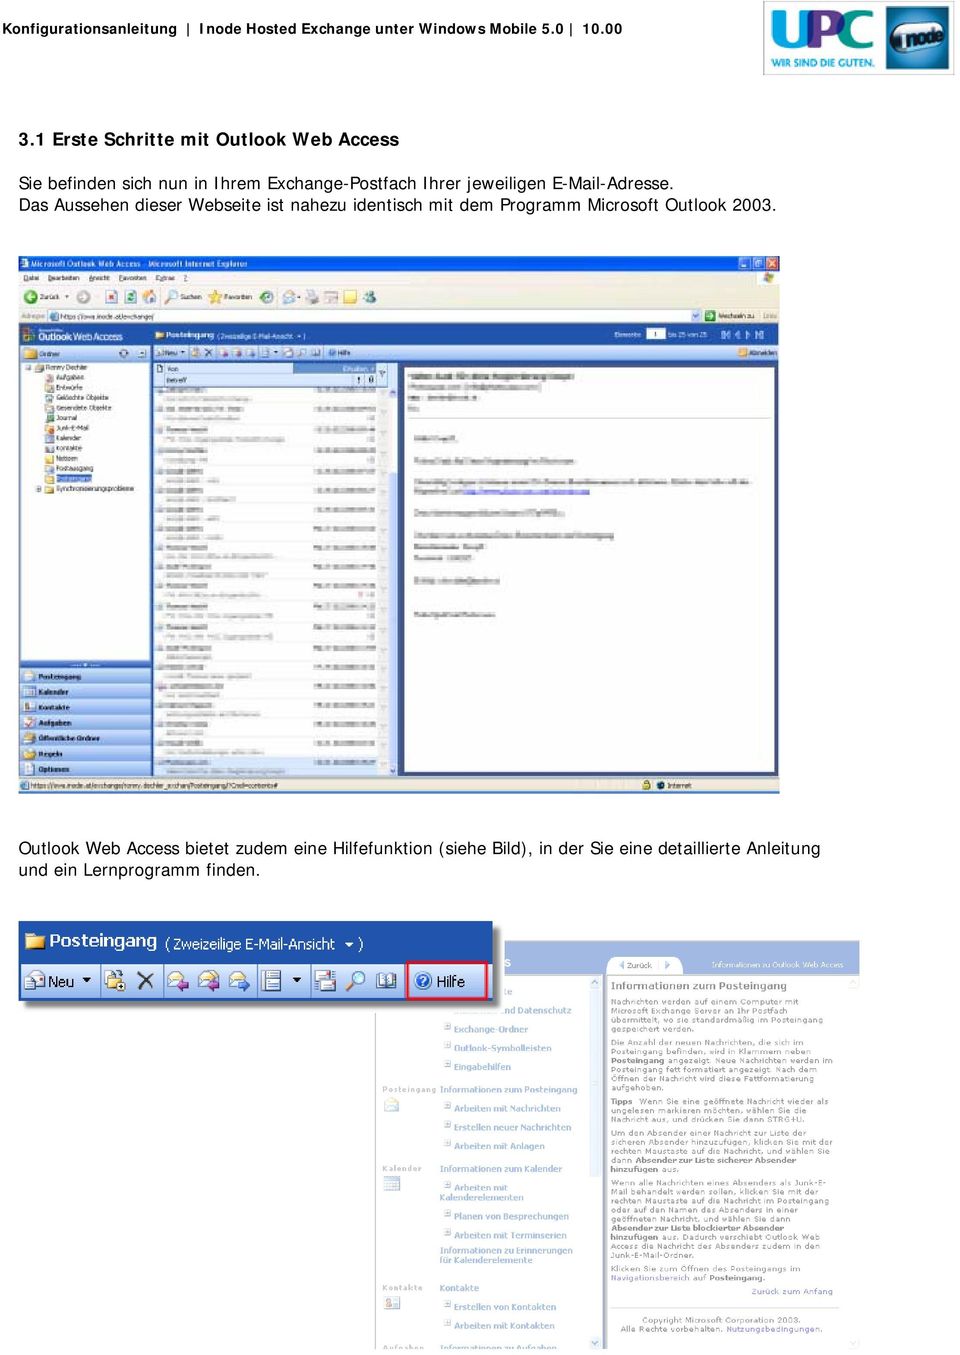 Das Aussehen dieser Webseite ist nahezu identisch mit dem Programm Microsoft Outlook